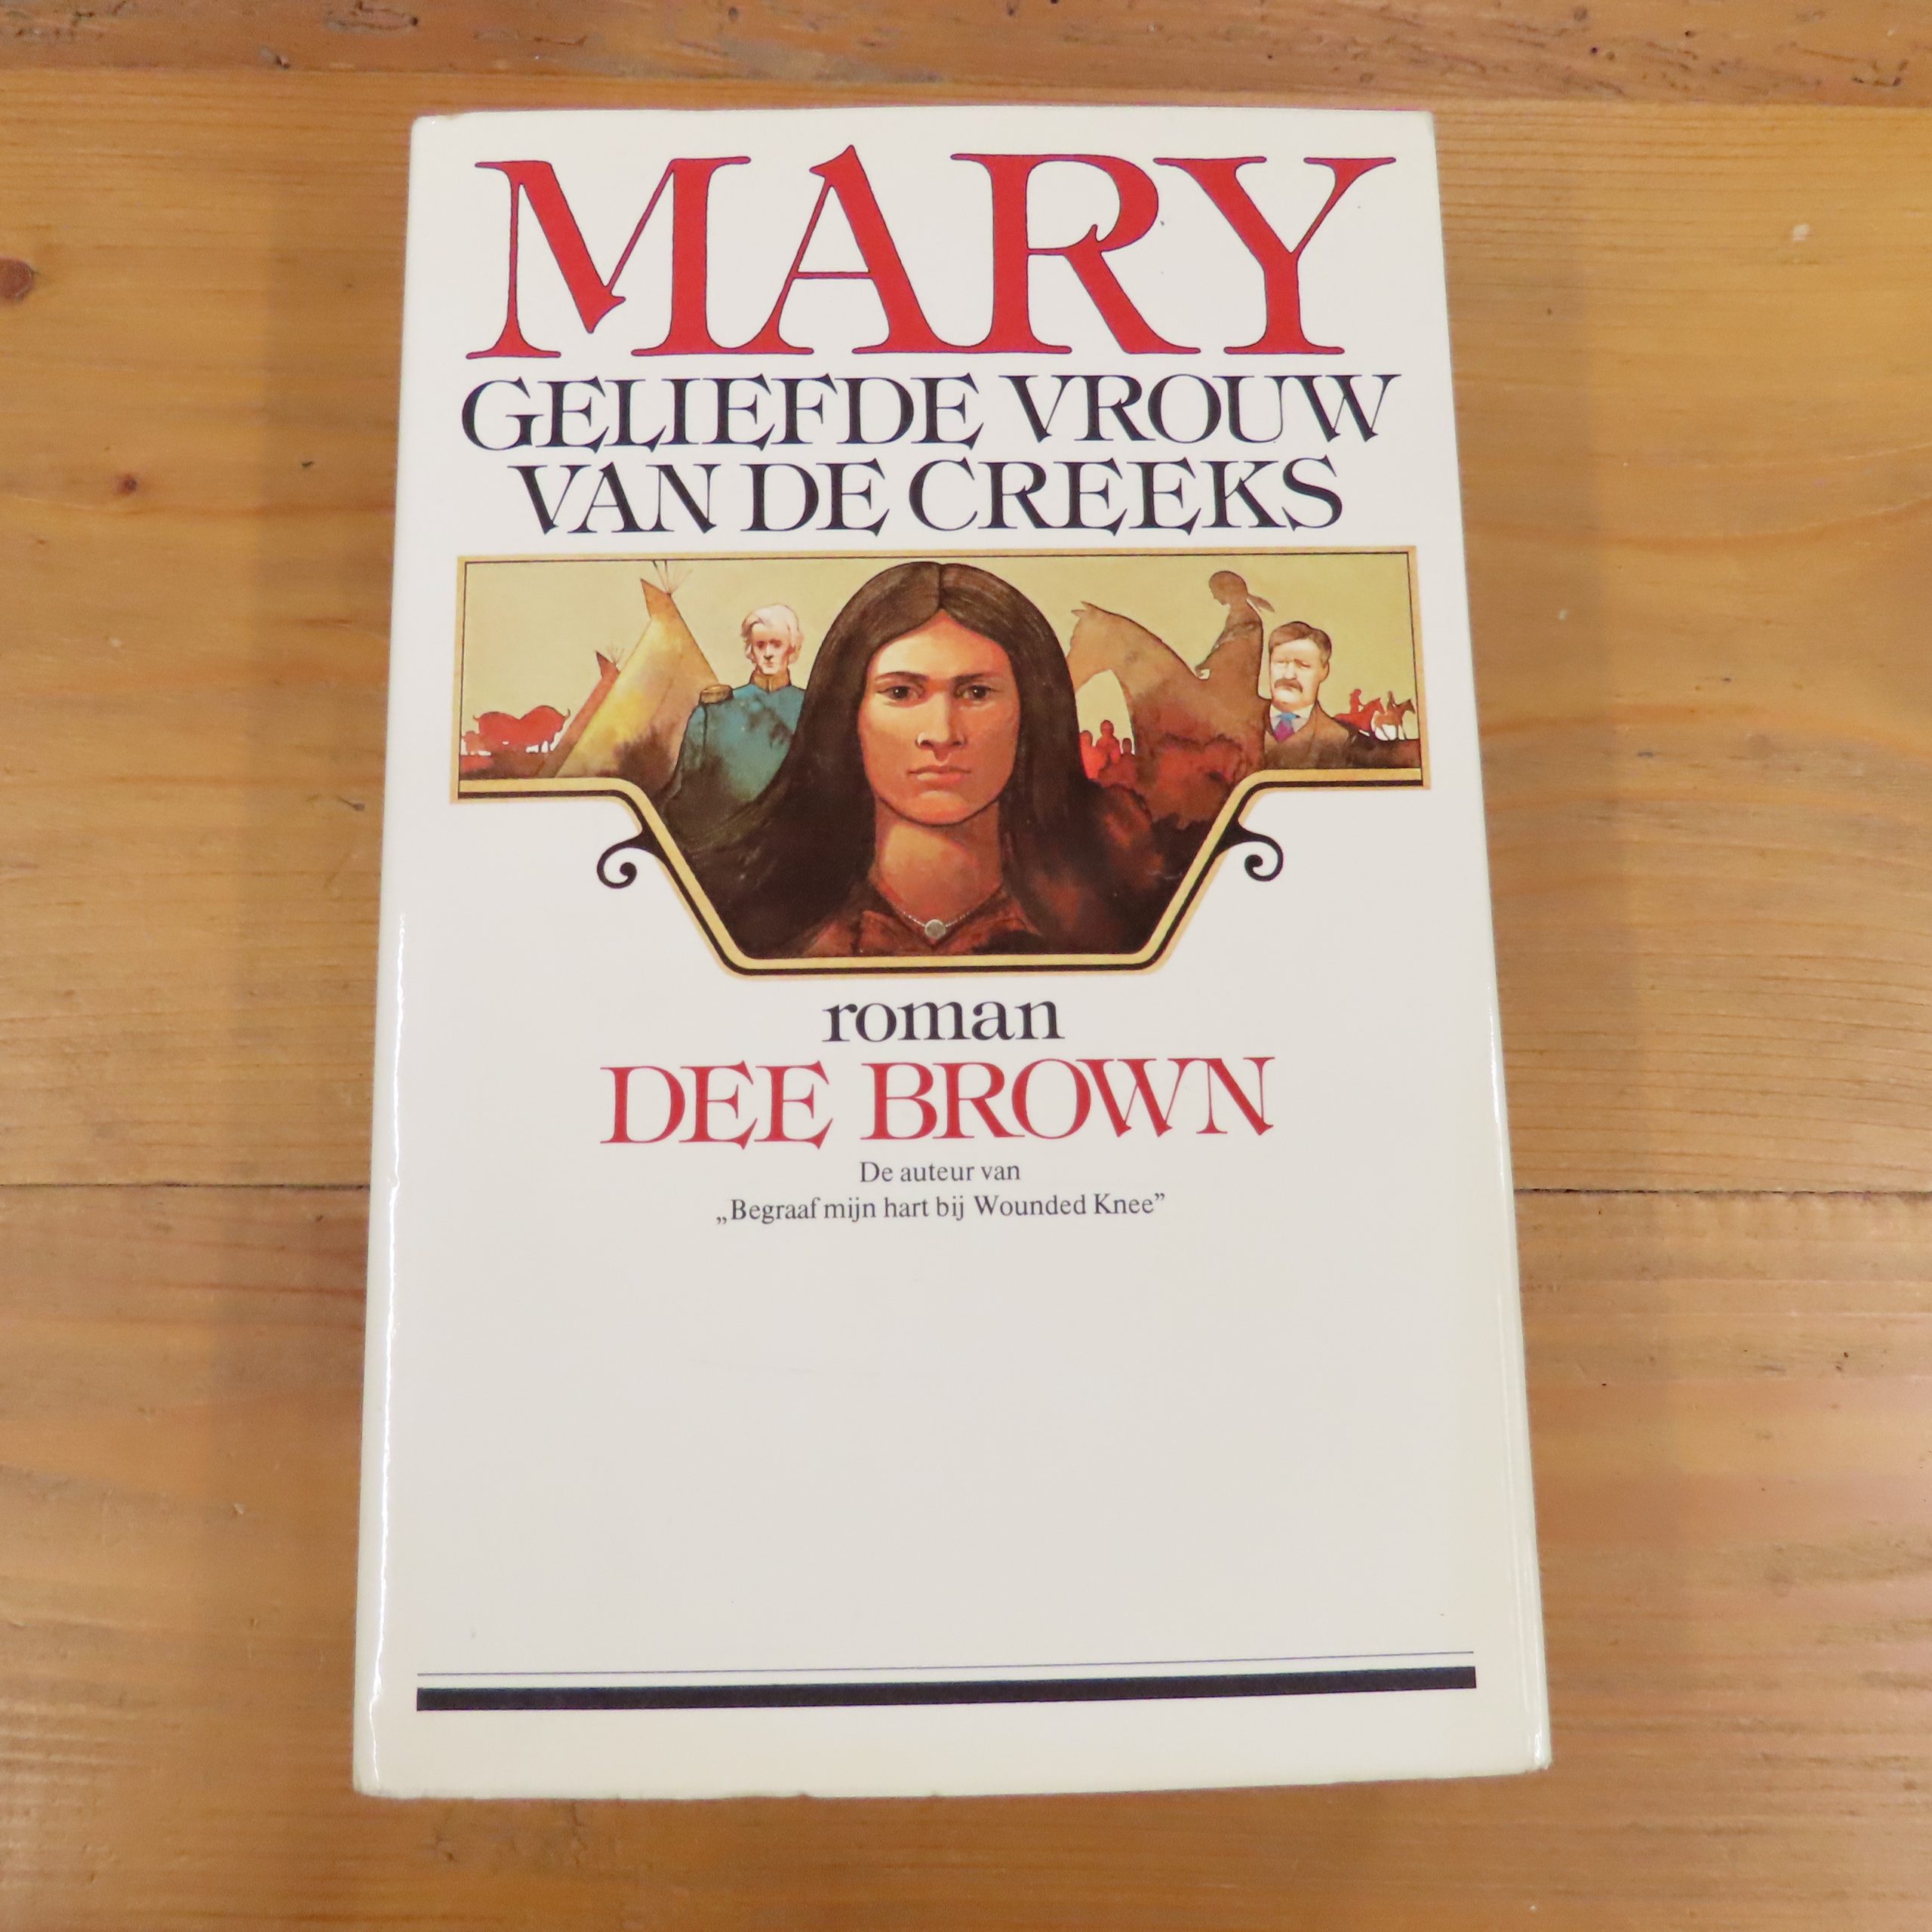 Boek “Mary, geliefde vrouw van de Creeks” van Dee Brown